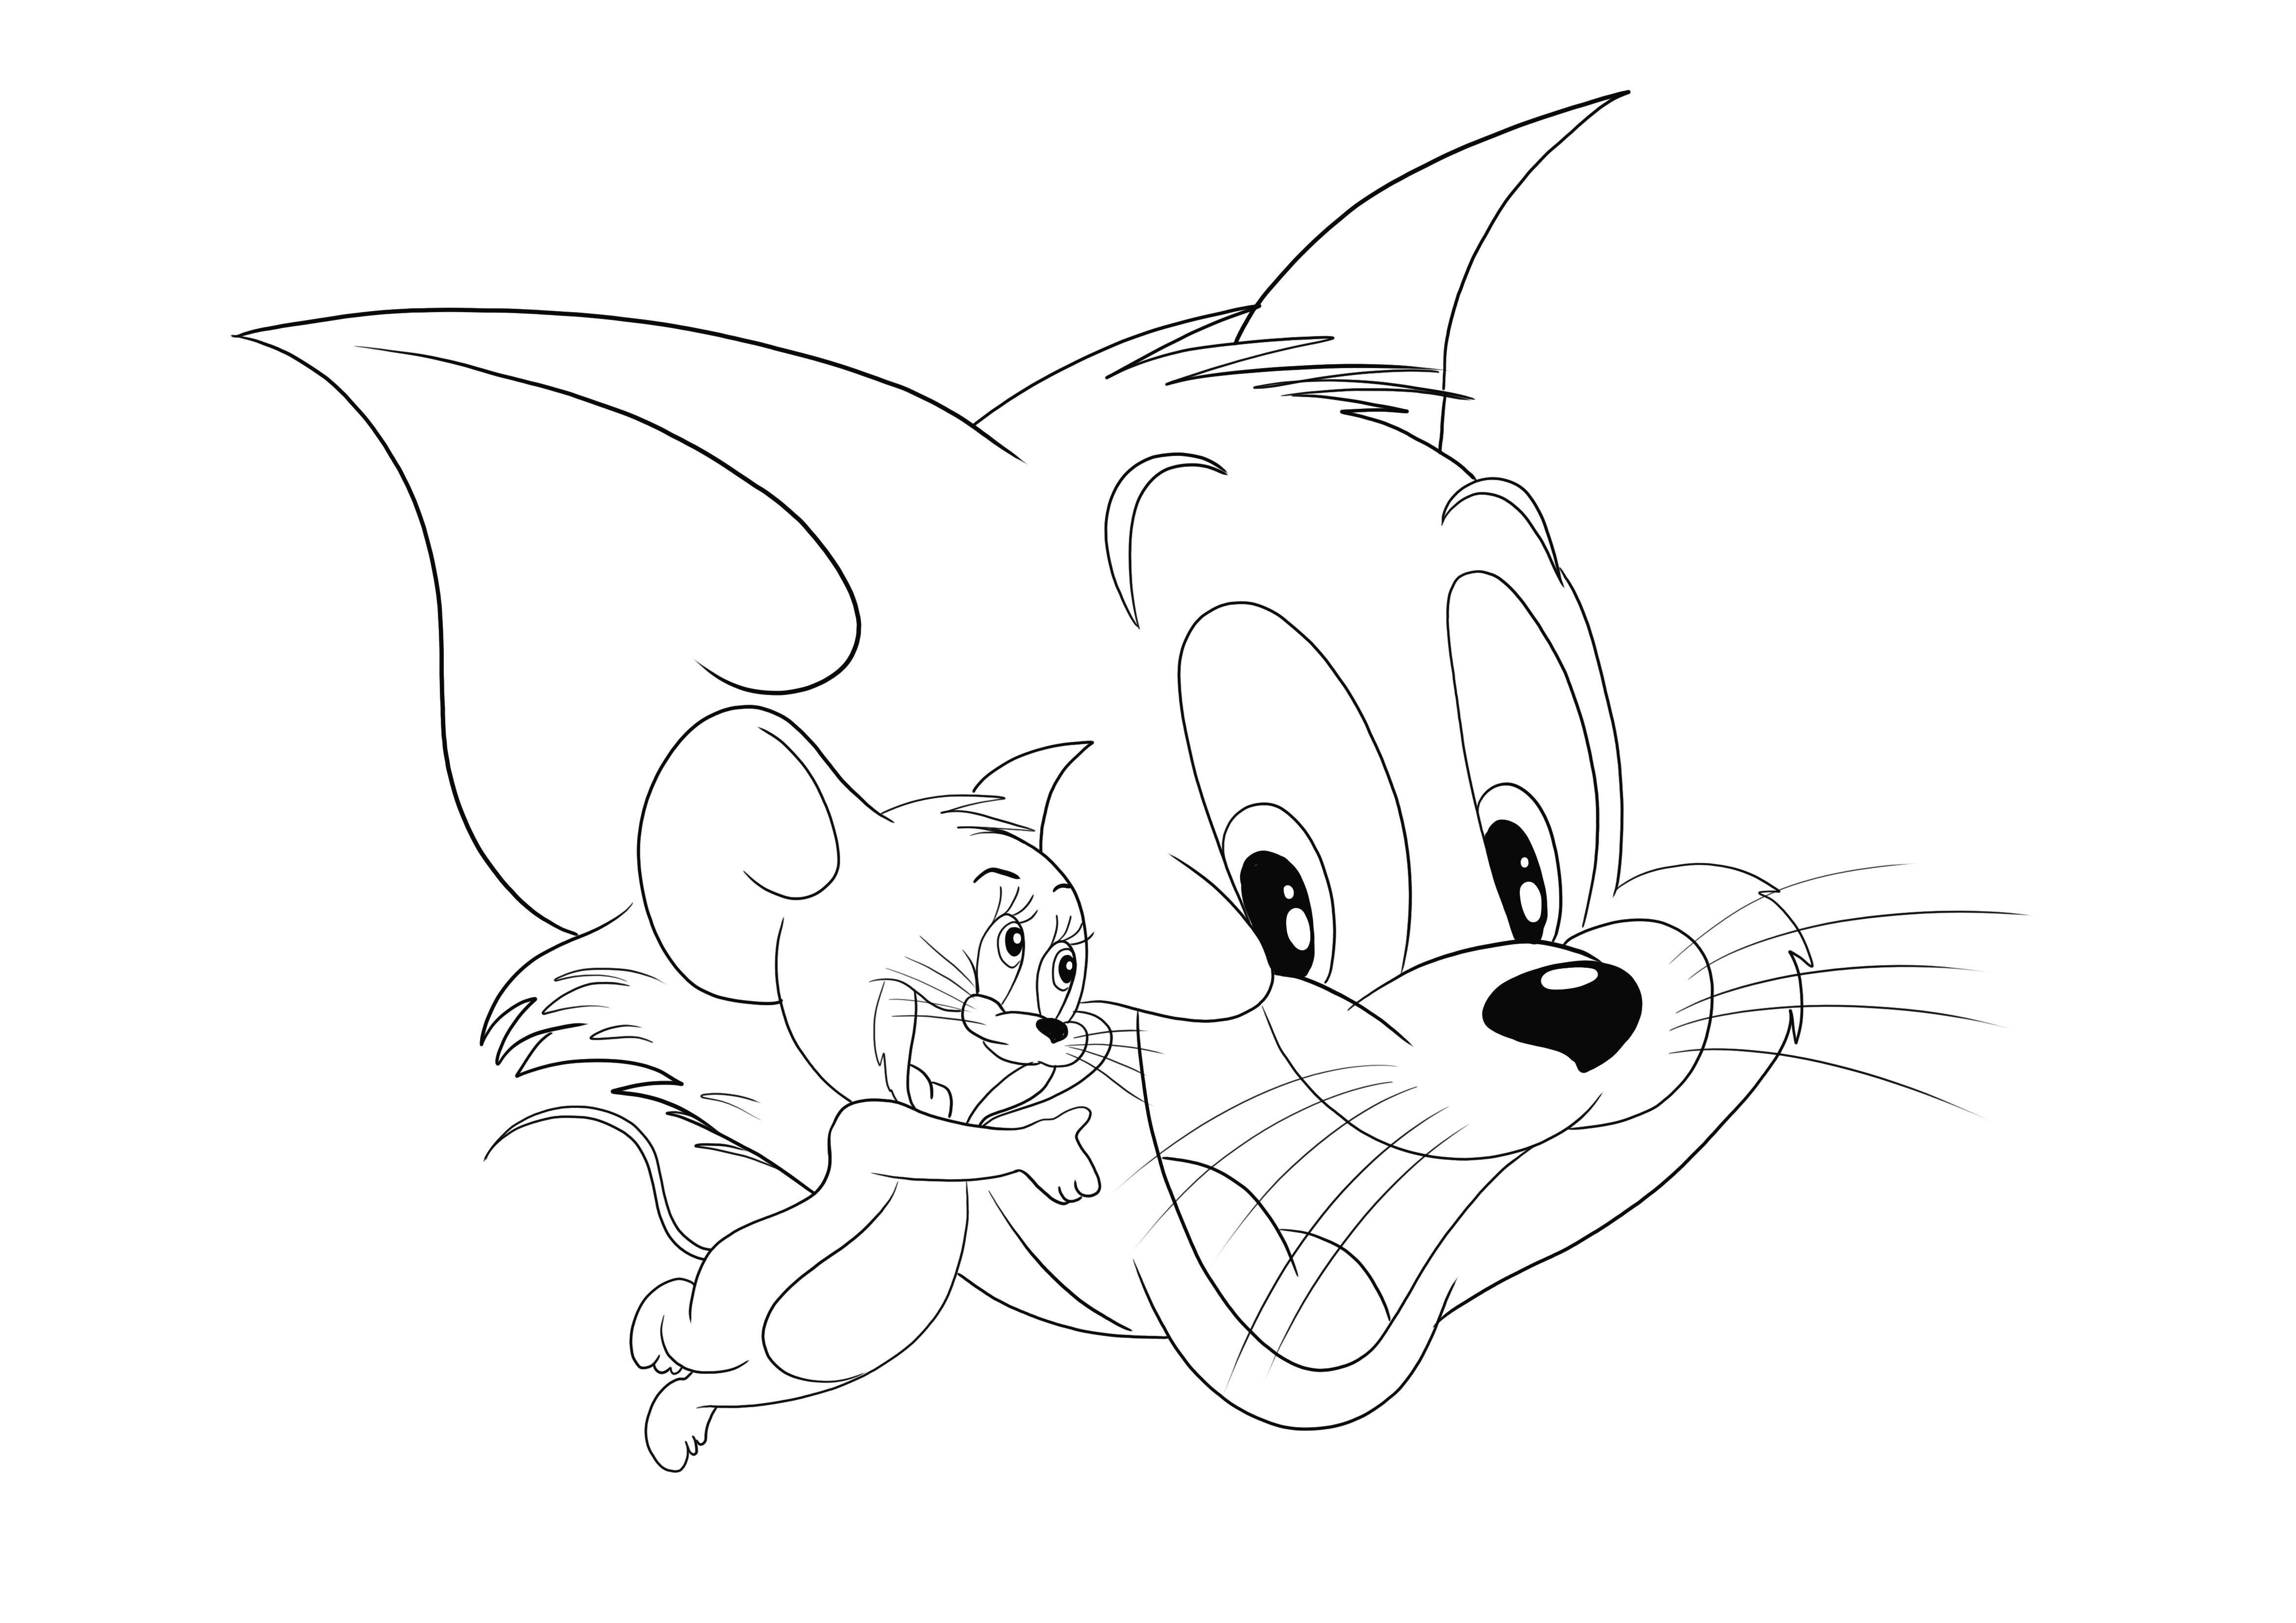 Tom und Jerry und ihre fröhlichen Gesichter warten darauf, von ihren kleinen Fans heruntergeladen und ausgemalt zu werden